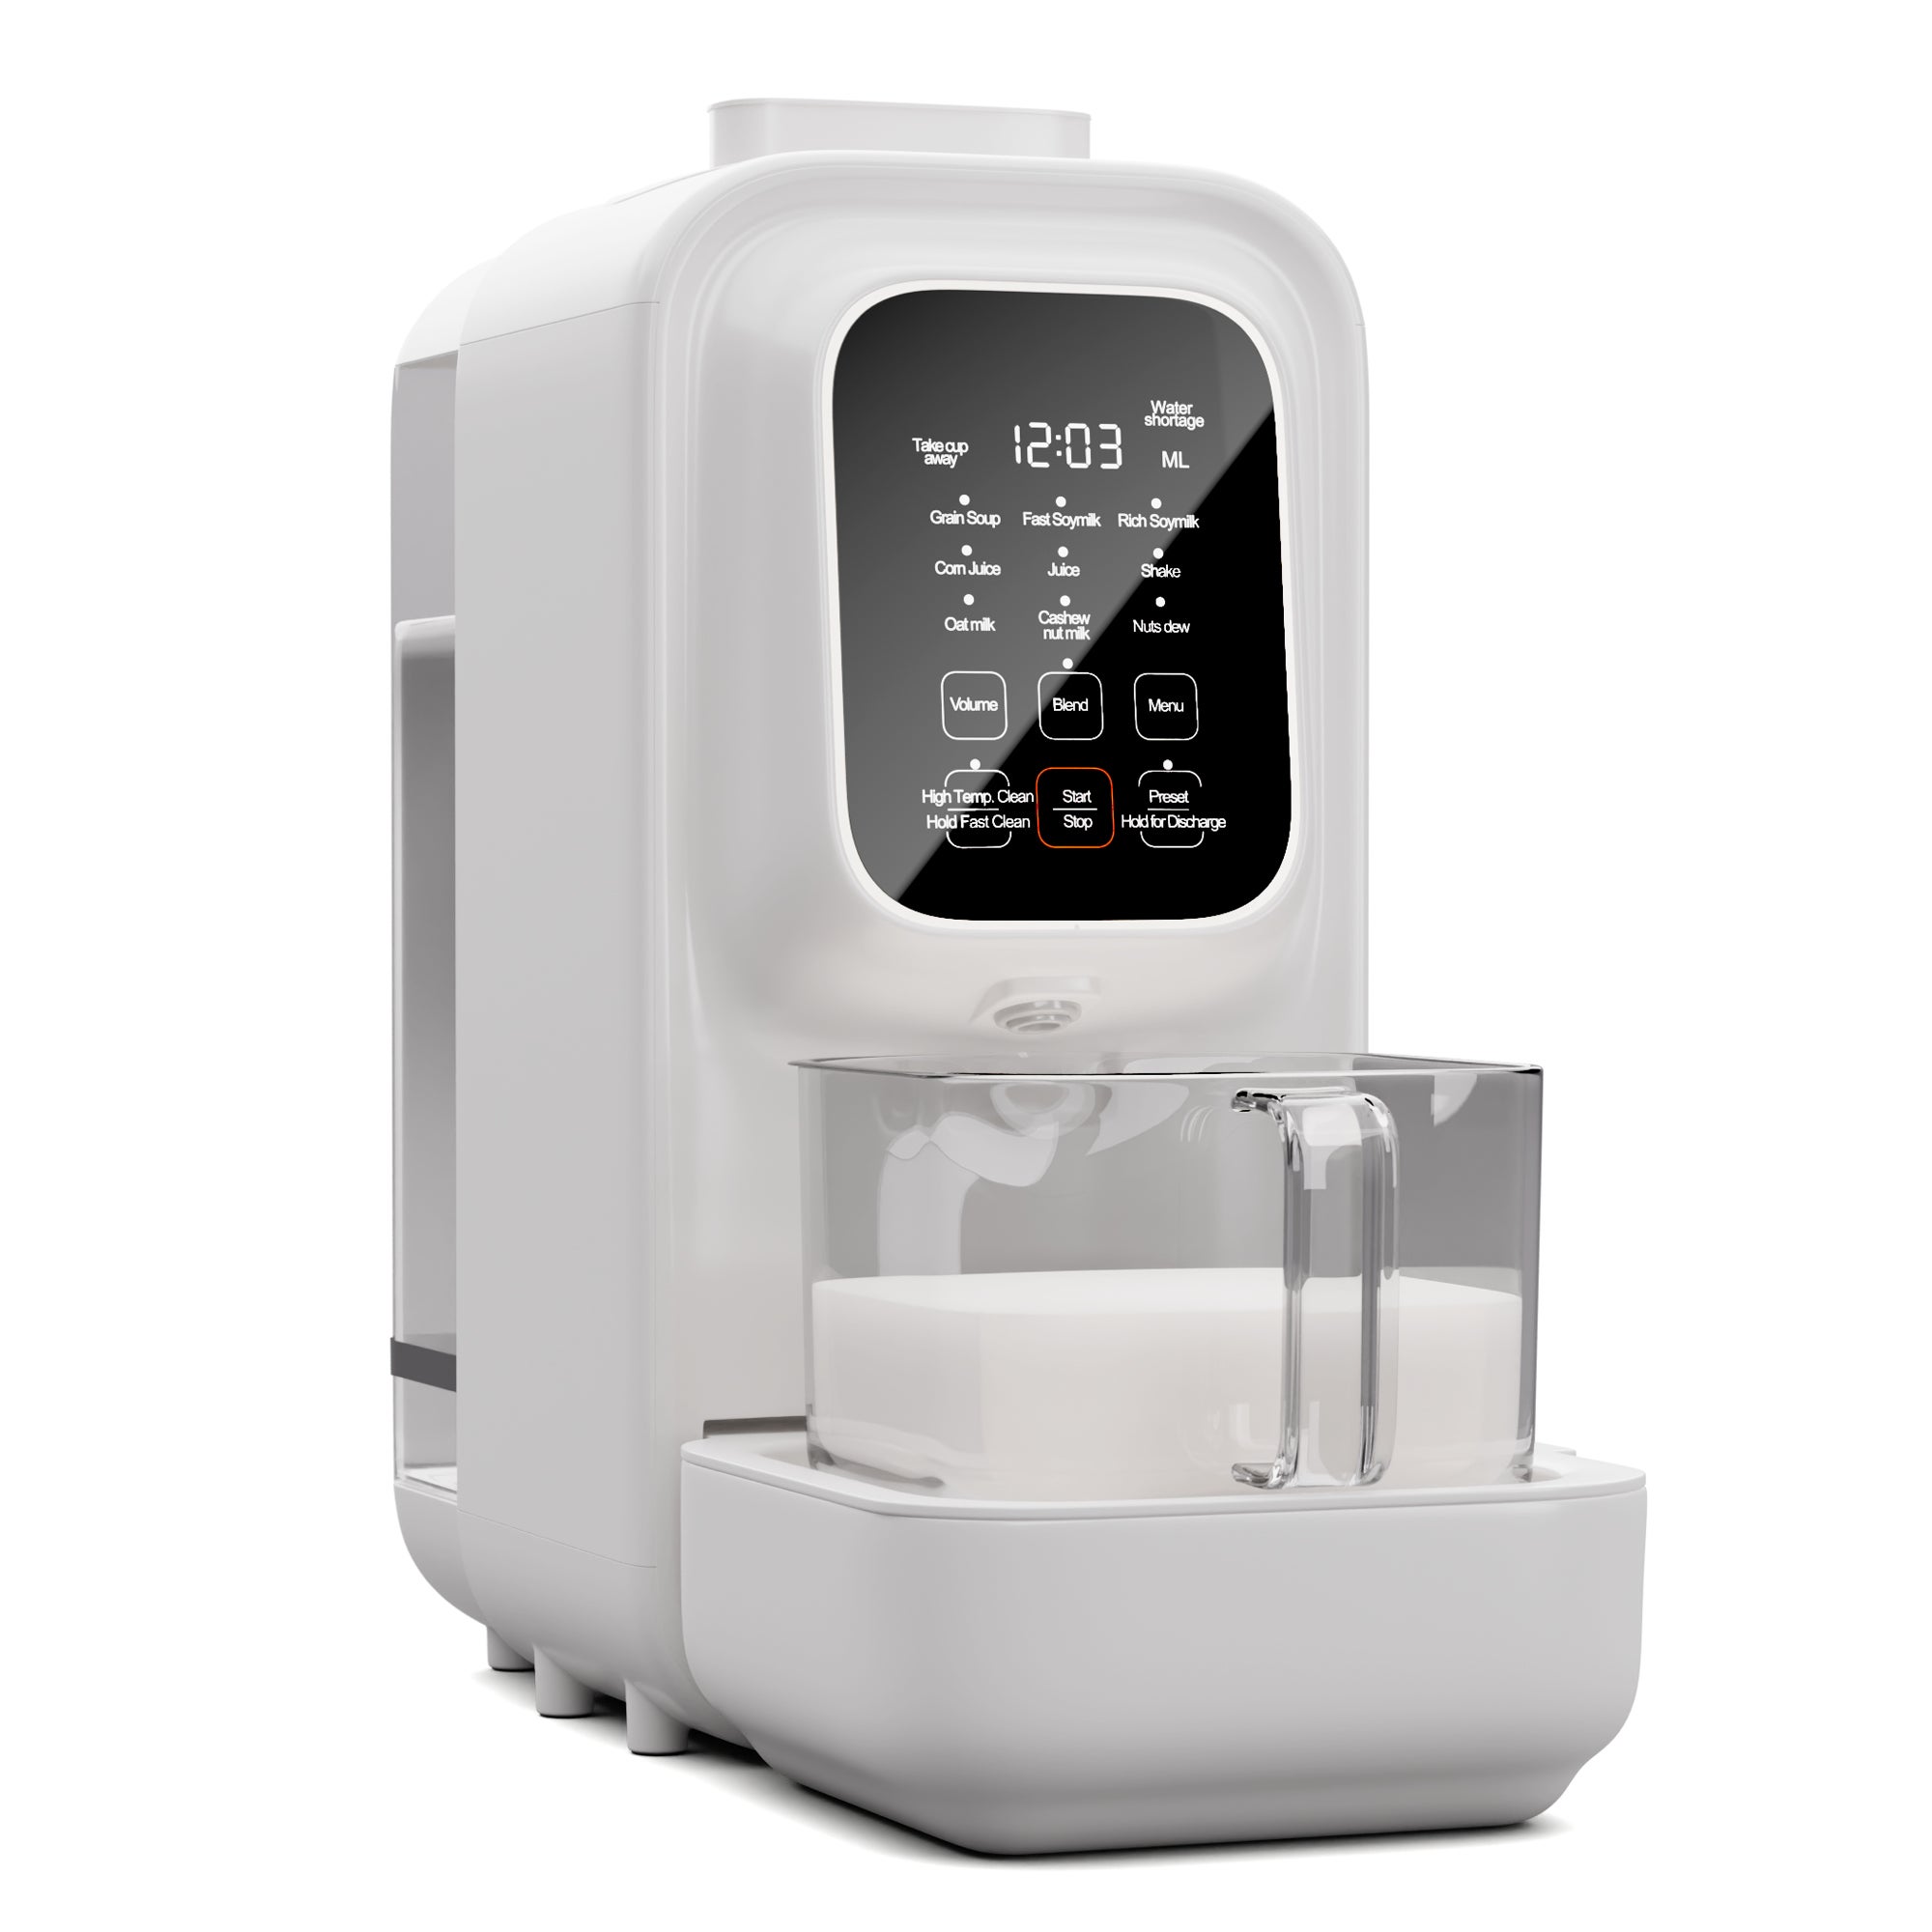 Machine à lait de soja – Machine à lait de noix végétalien 6 en 1 – La  machine à lait de noix fonctionne comme : machine à lait d'amande, machine  à